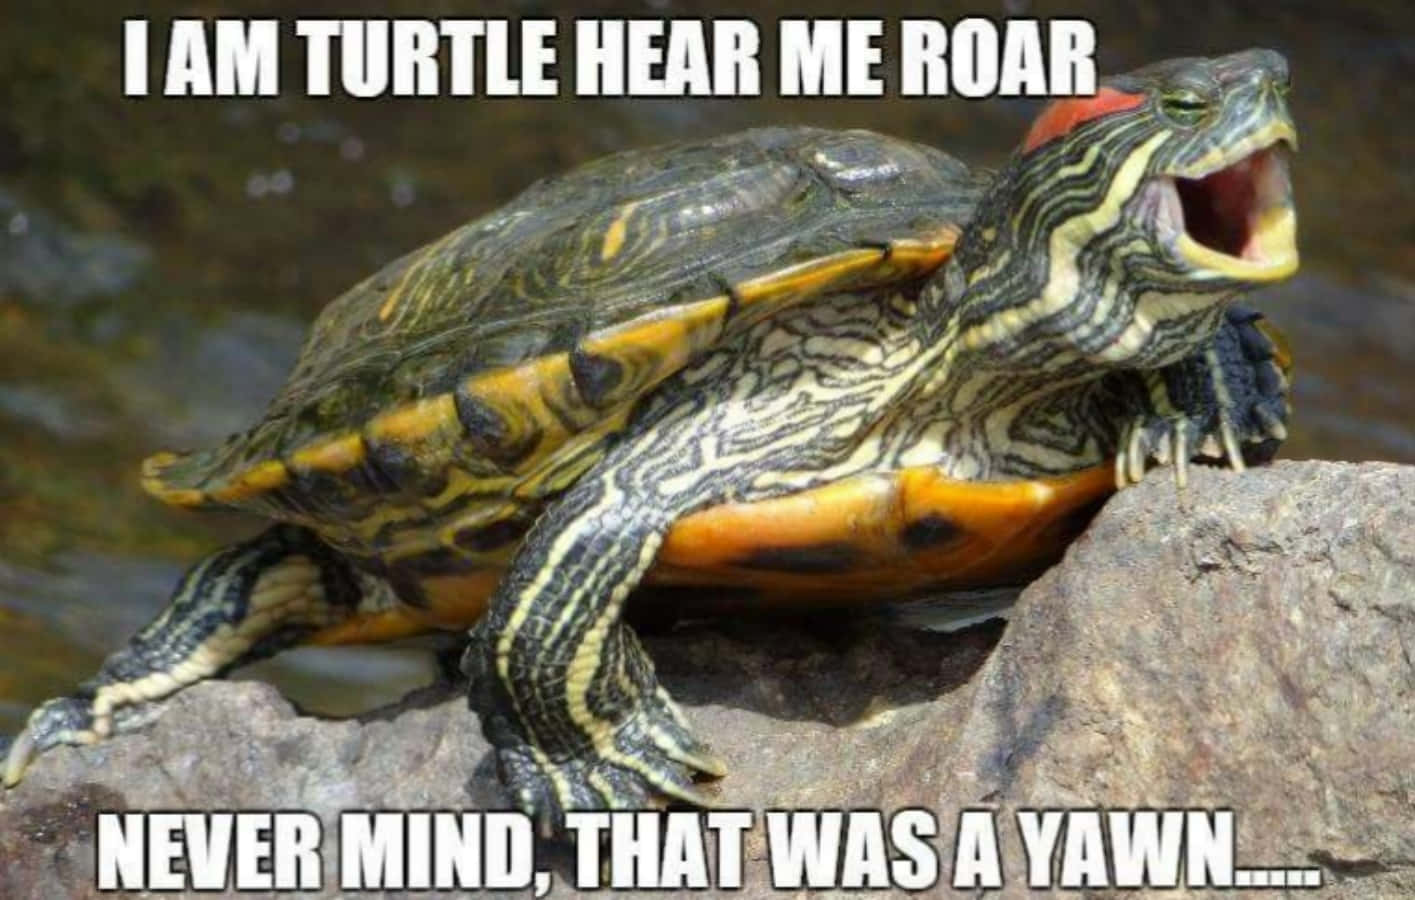 Lustigeschildkrötenbilder Als Meme